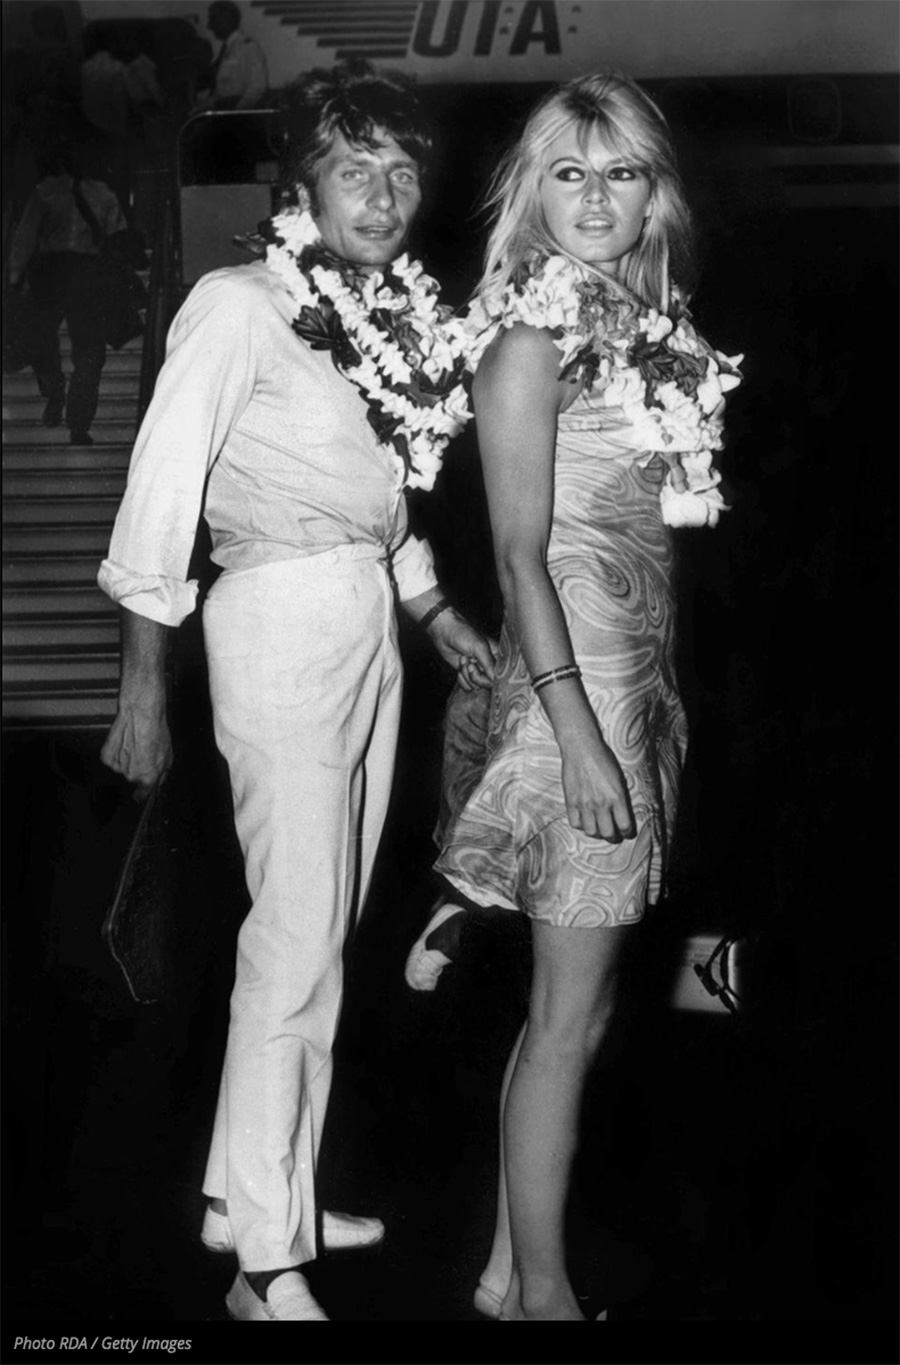 les plus belles photos de Brigitte Bardot.Brigitte Bardot en Mai 1966, elle rencontre le play-boy et milliardaire allemand Gunter Sachs.
« J'avais déjà connu bien des hommes, j'avais aimé, vécu des passions, mais ce soir-là,
je m'envolais, portée par Gunter dans un monde féerique, que je n'avais jamais connu
et que je ne connaîtrais jamais plus. » BB l'épouse en troisièmes noces 
le 14 juillet 1966 à Las Vegas, à peine deux mois après leur rencontre.
© Photo : RDA / Getty Images